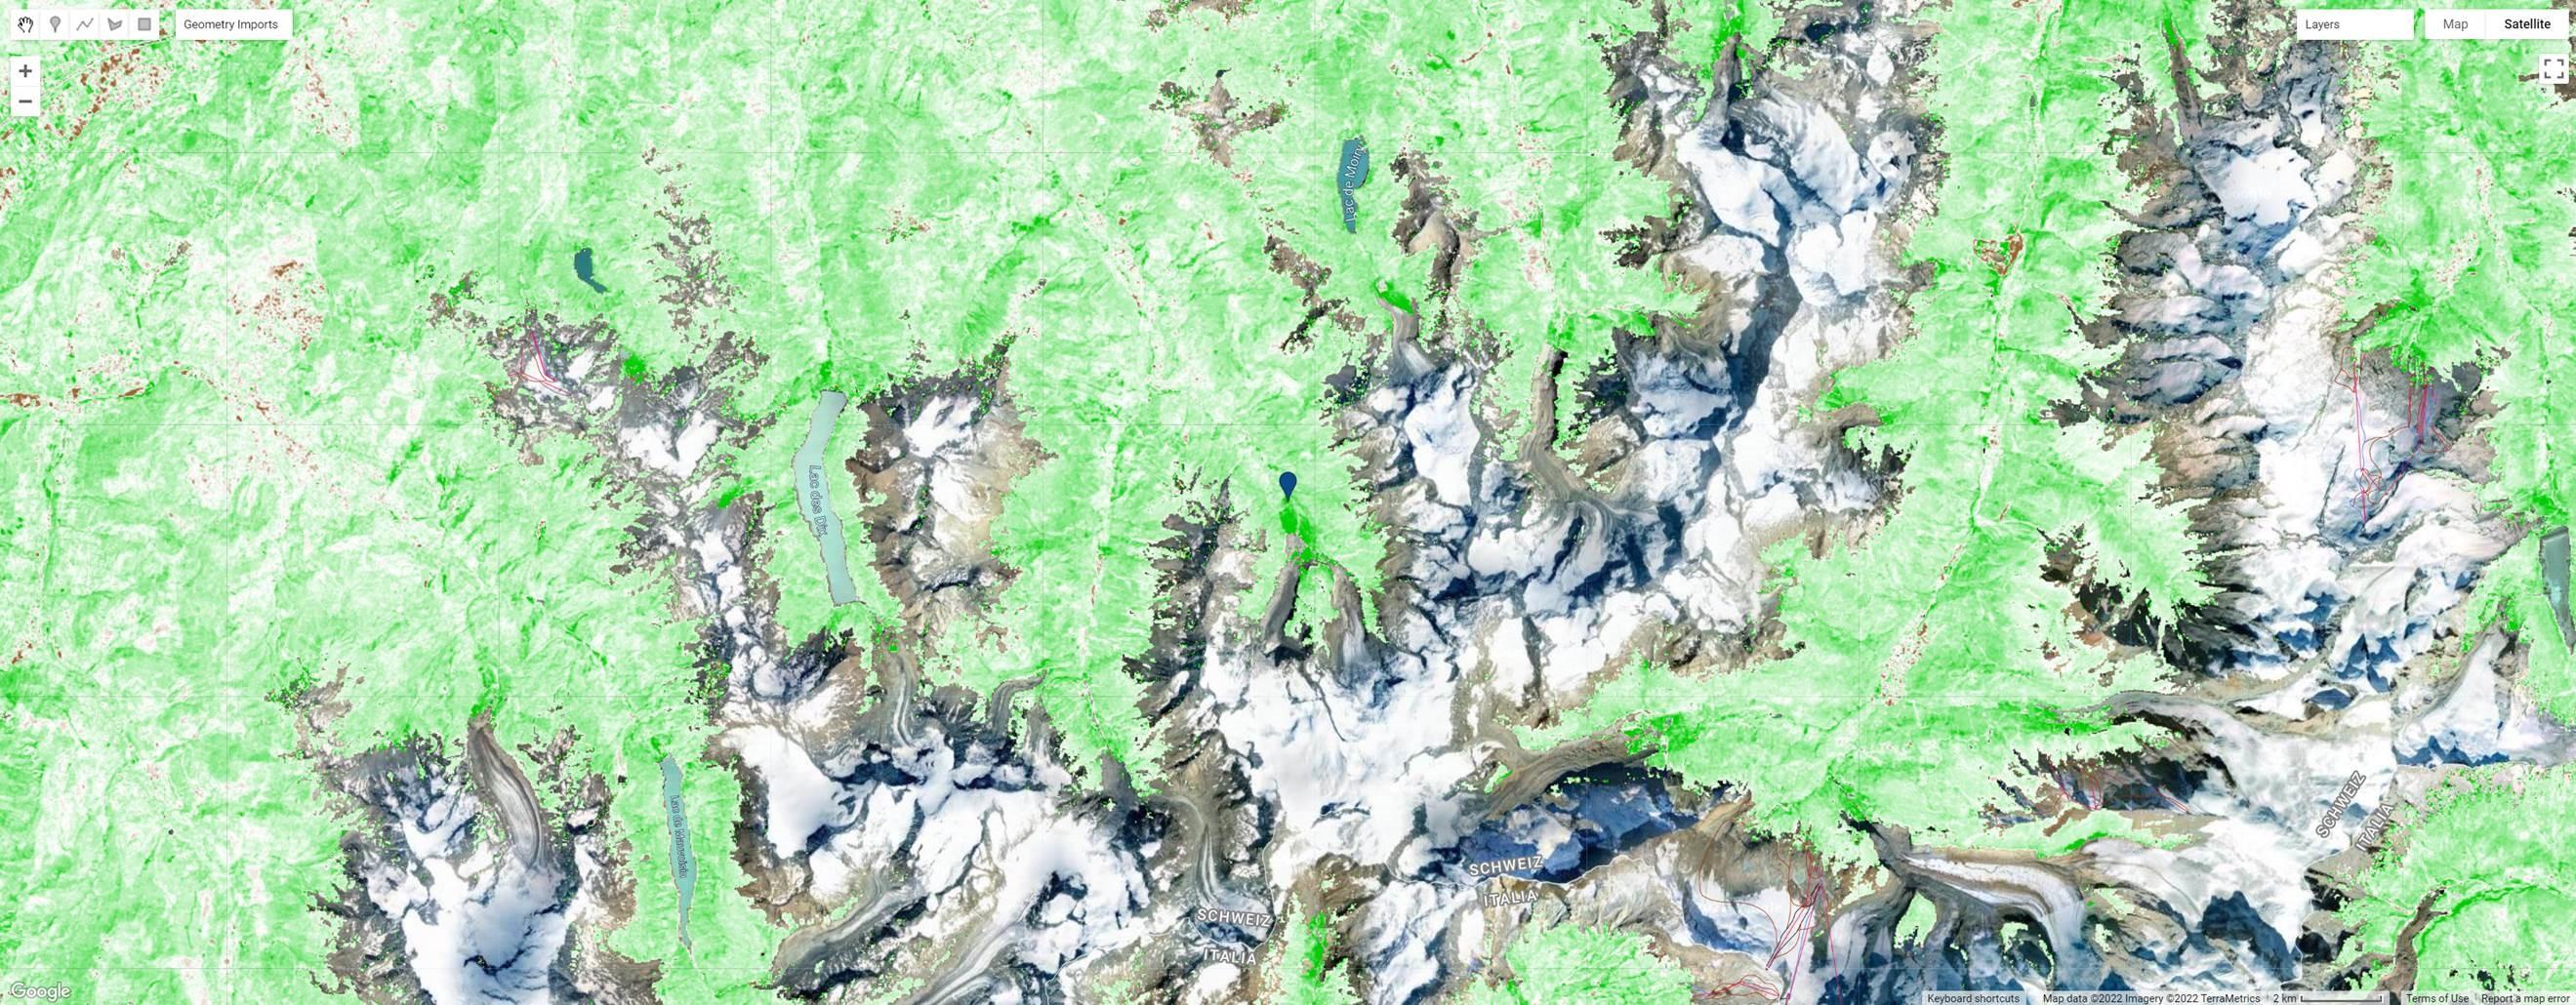 Représentation des endroits où la végétation a progressé sur les 40 dernières années, basée sur des images de la NASA. L'intensité du vert est proportionnelle au degré de progression de la végétation. Les (rares) endroits en brun correspondent à un déclin de la végétation. Les zones de glaciers sont transparentes car elles n'ont pas été considérées dans l'étude. [NASA - UNIL/UNIBAS]